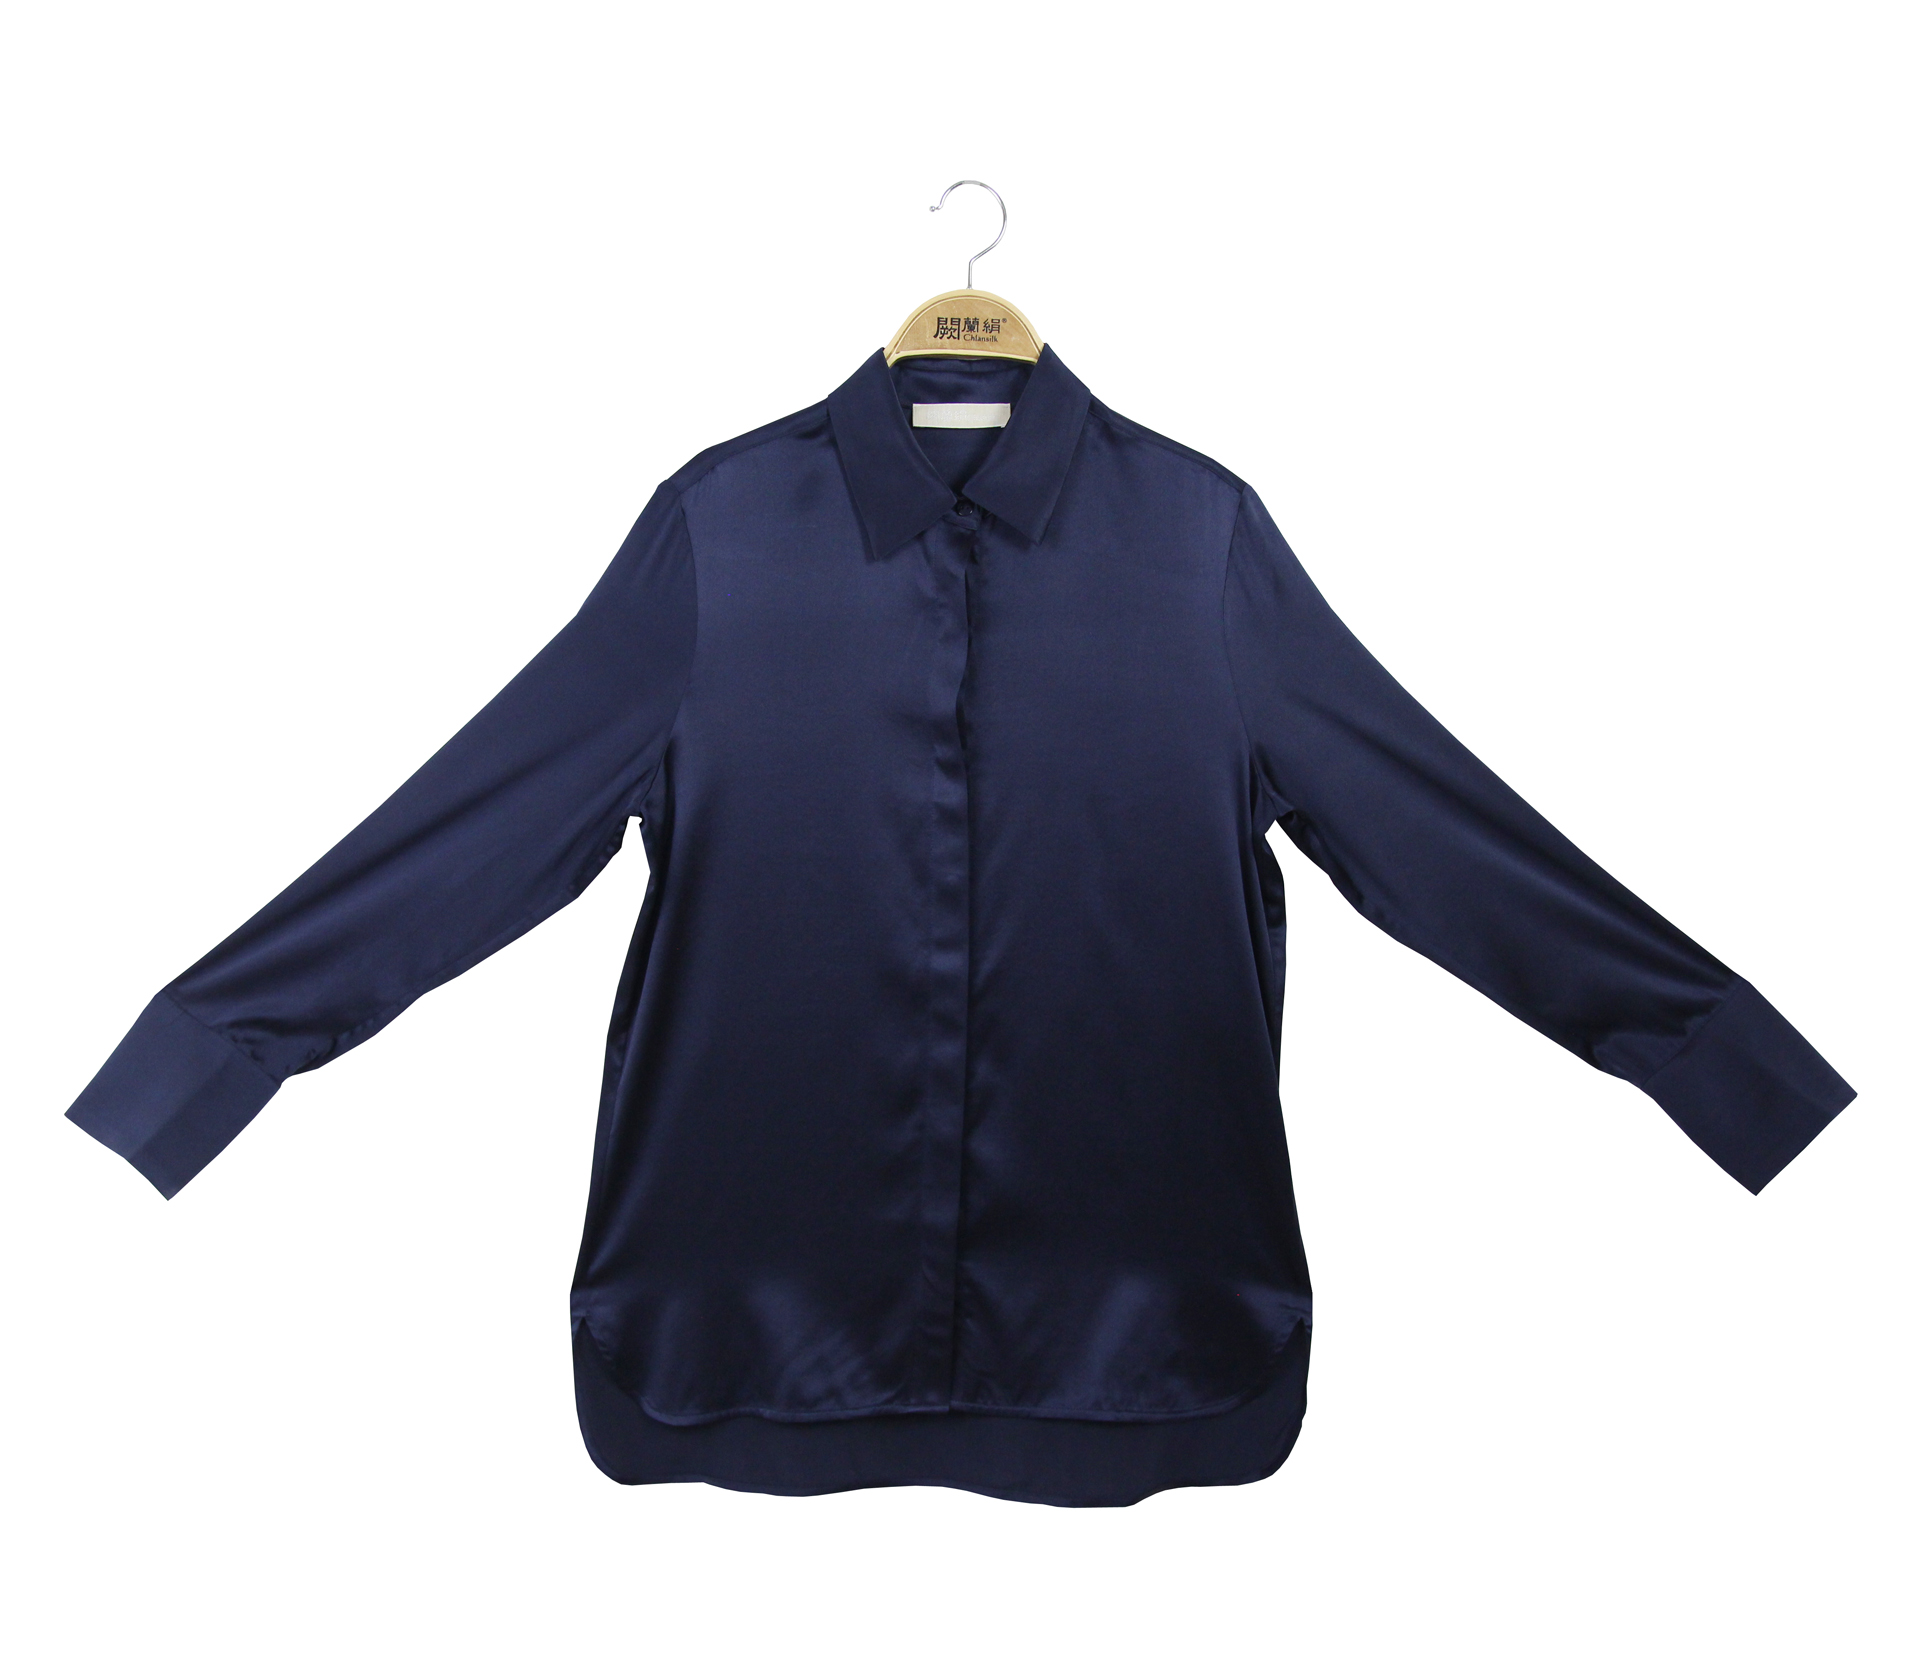 闕蘭絹自在舒適蠶絲緞面襯衫 - 藍色 - 6034